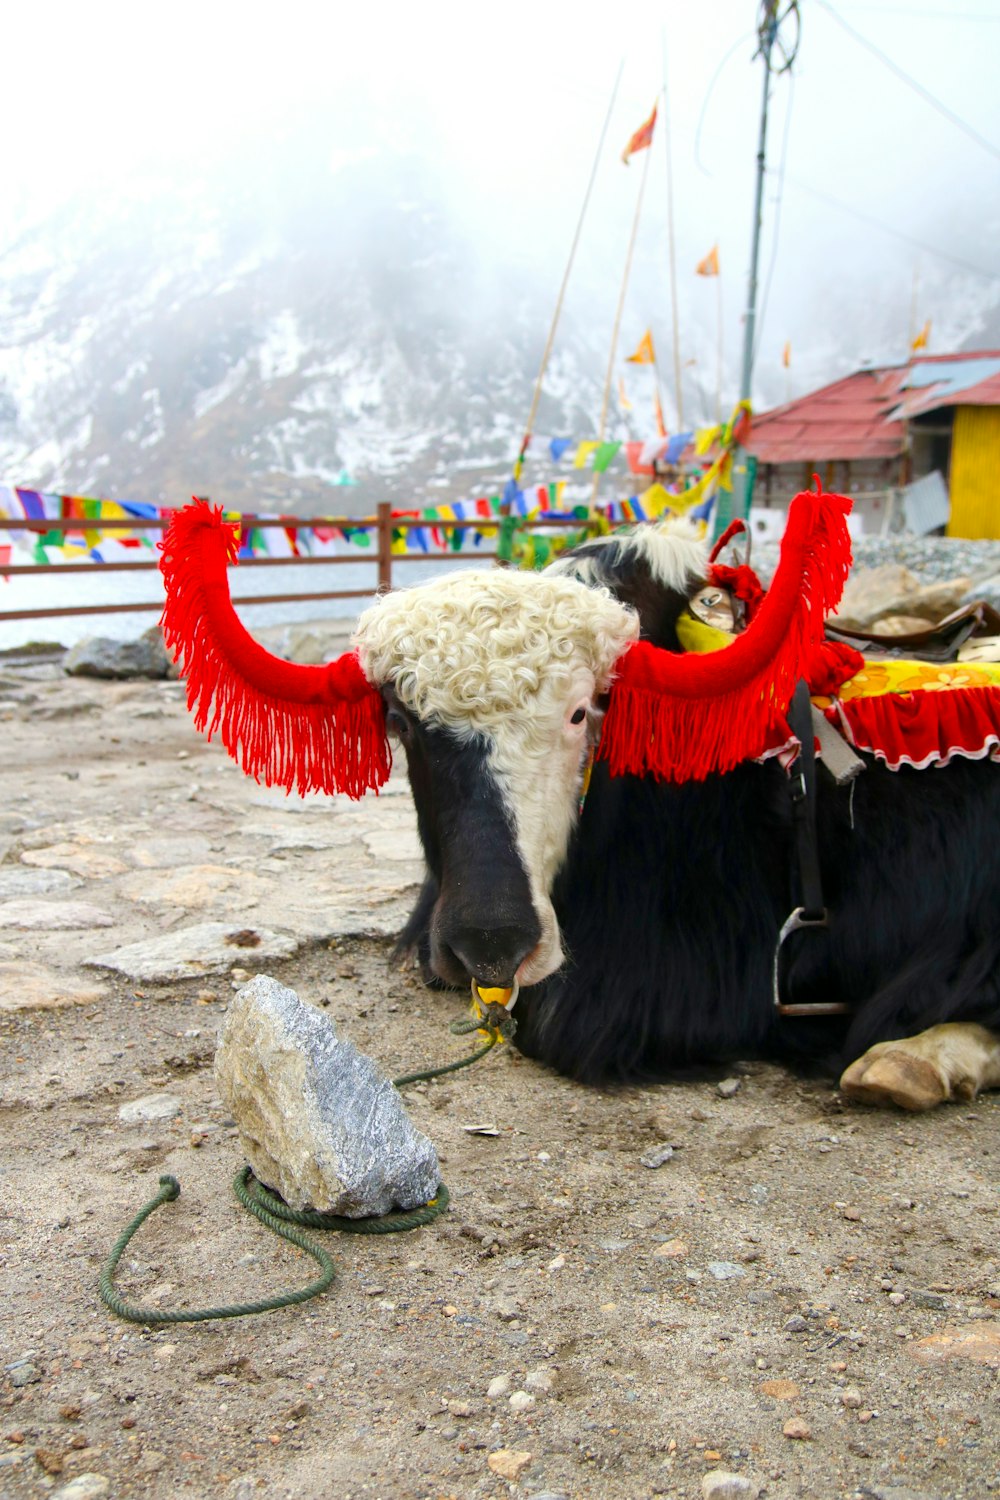 Eine schwarz-weiße Kuh mit roten Hörnern liegt auf dem Boden